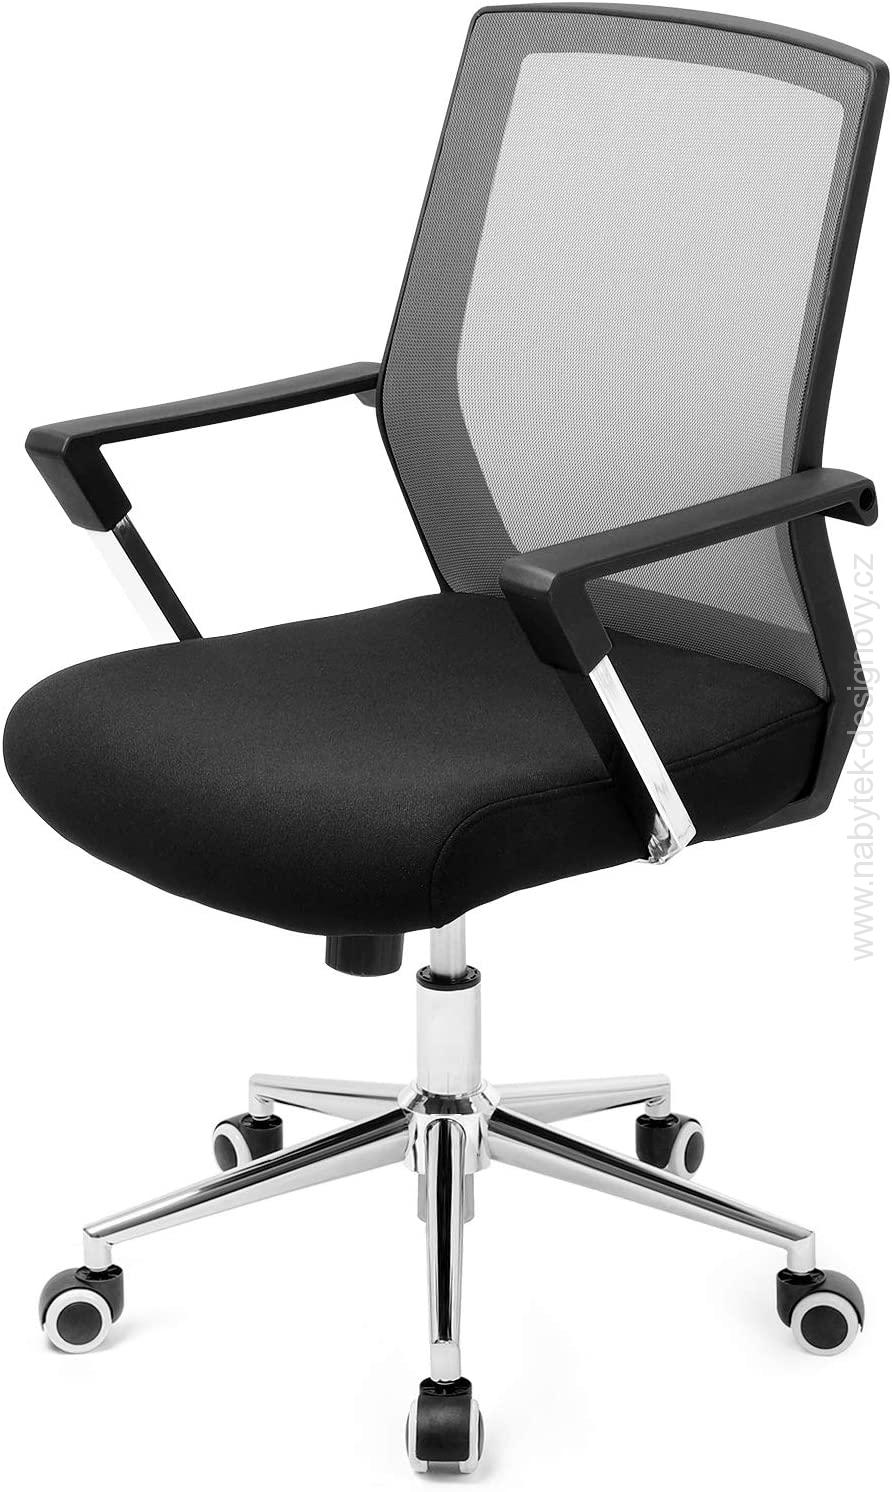 Kancelárska stolička Karcoolka, ergonomická nastaviteľná